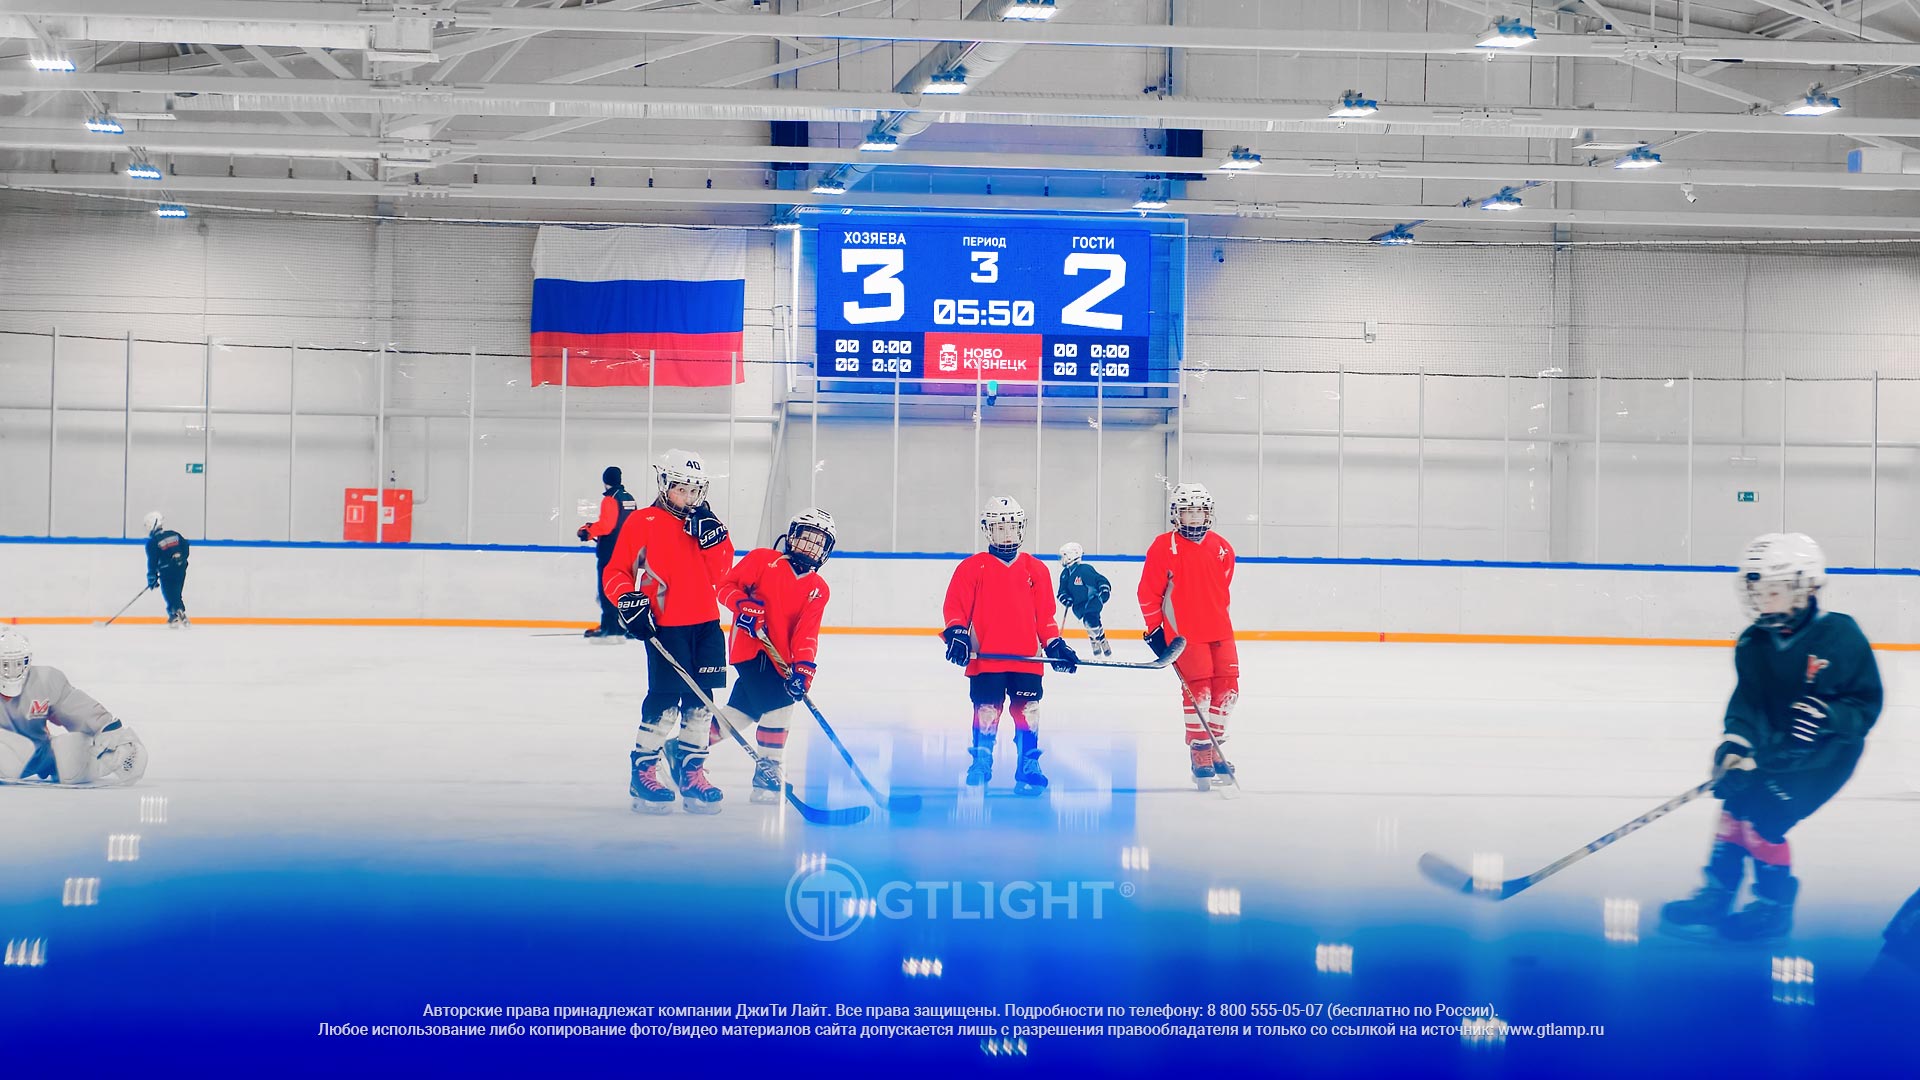 Мотивация на спортивные достижения! Что помогает развиваться будущим хоккеистам России?